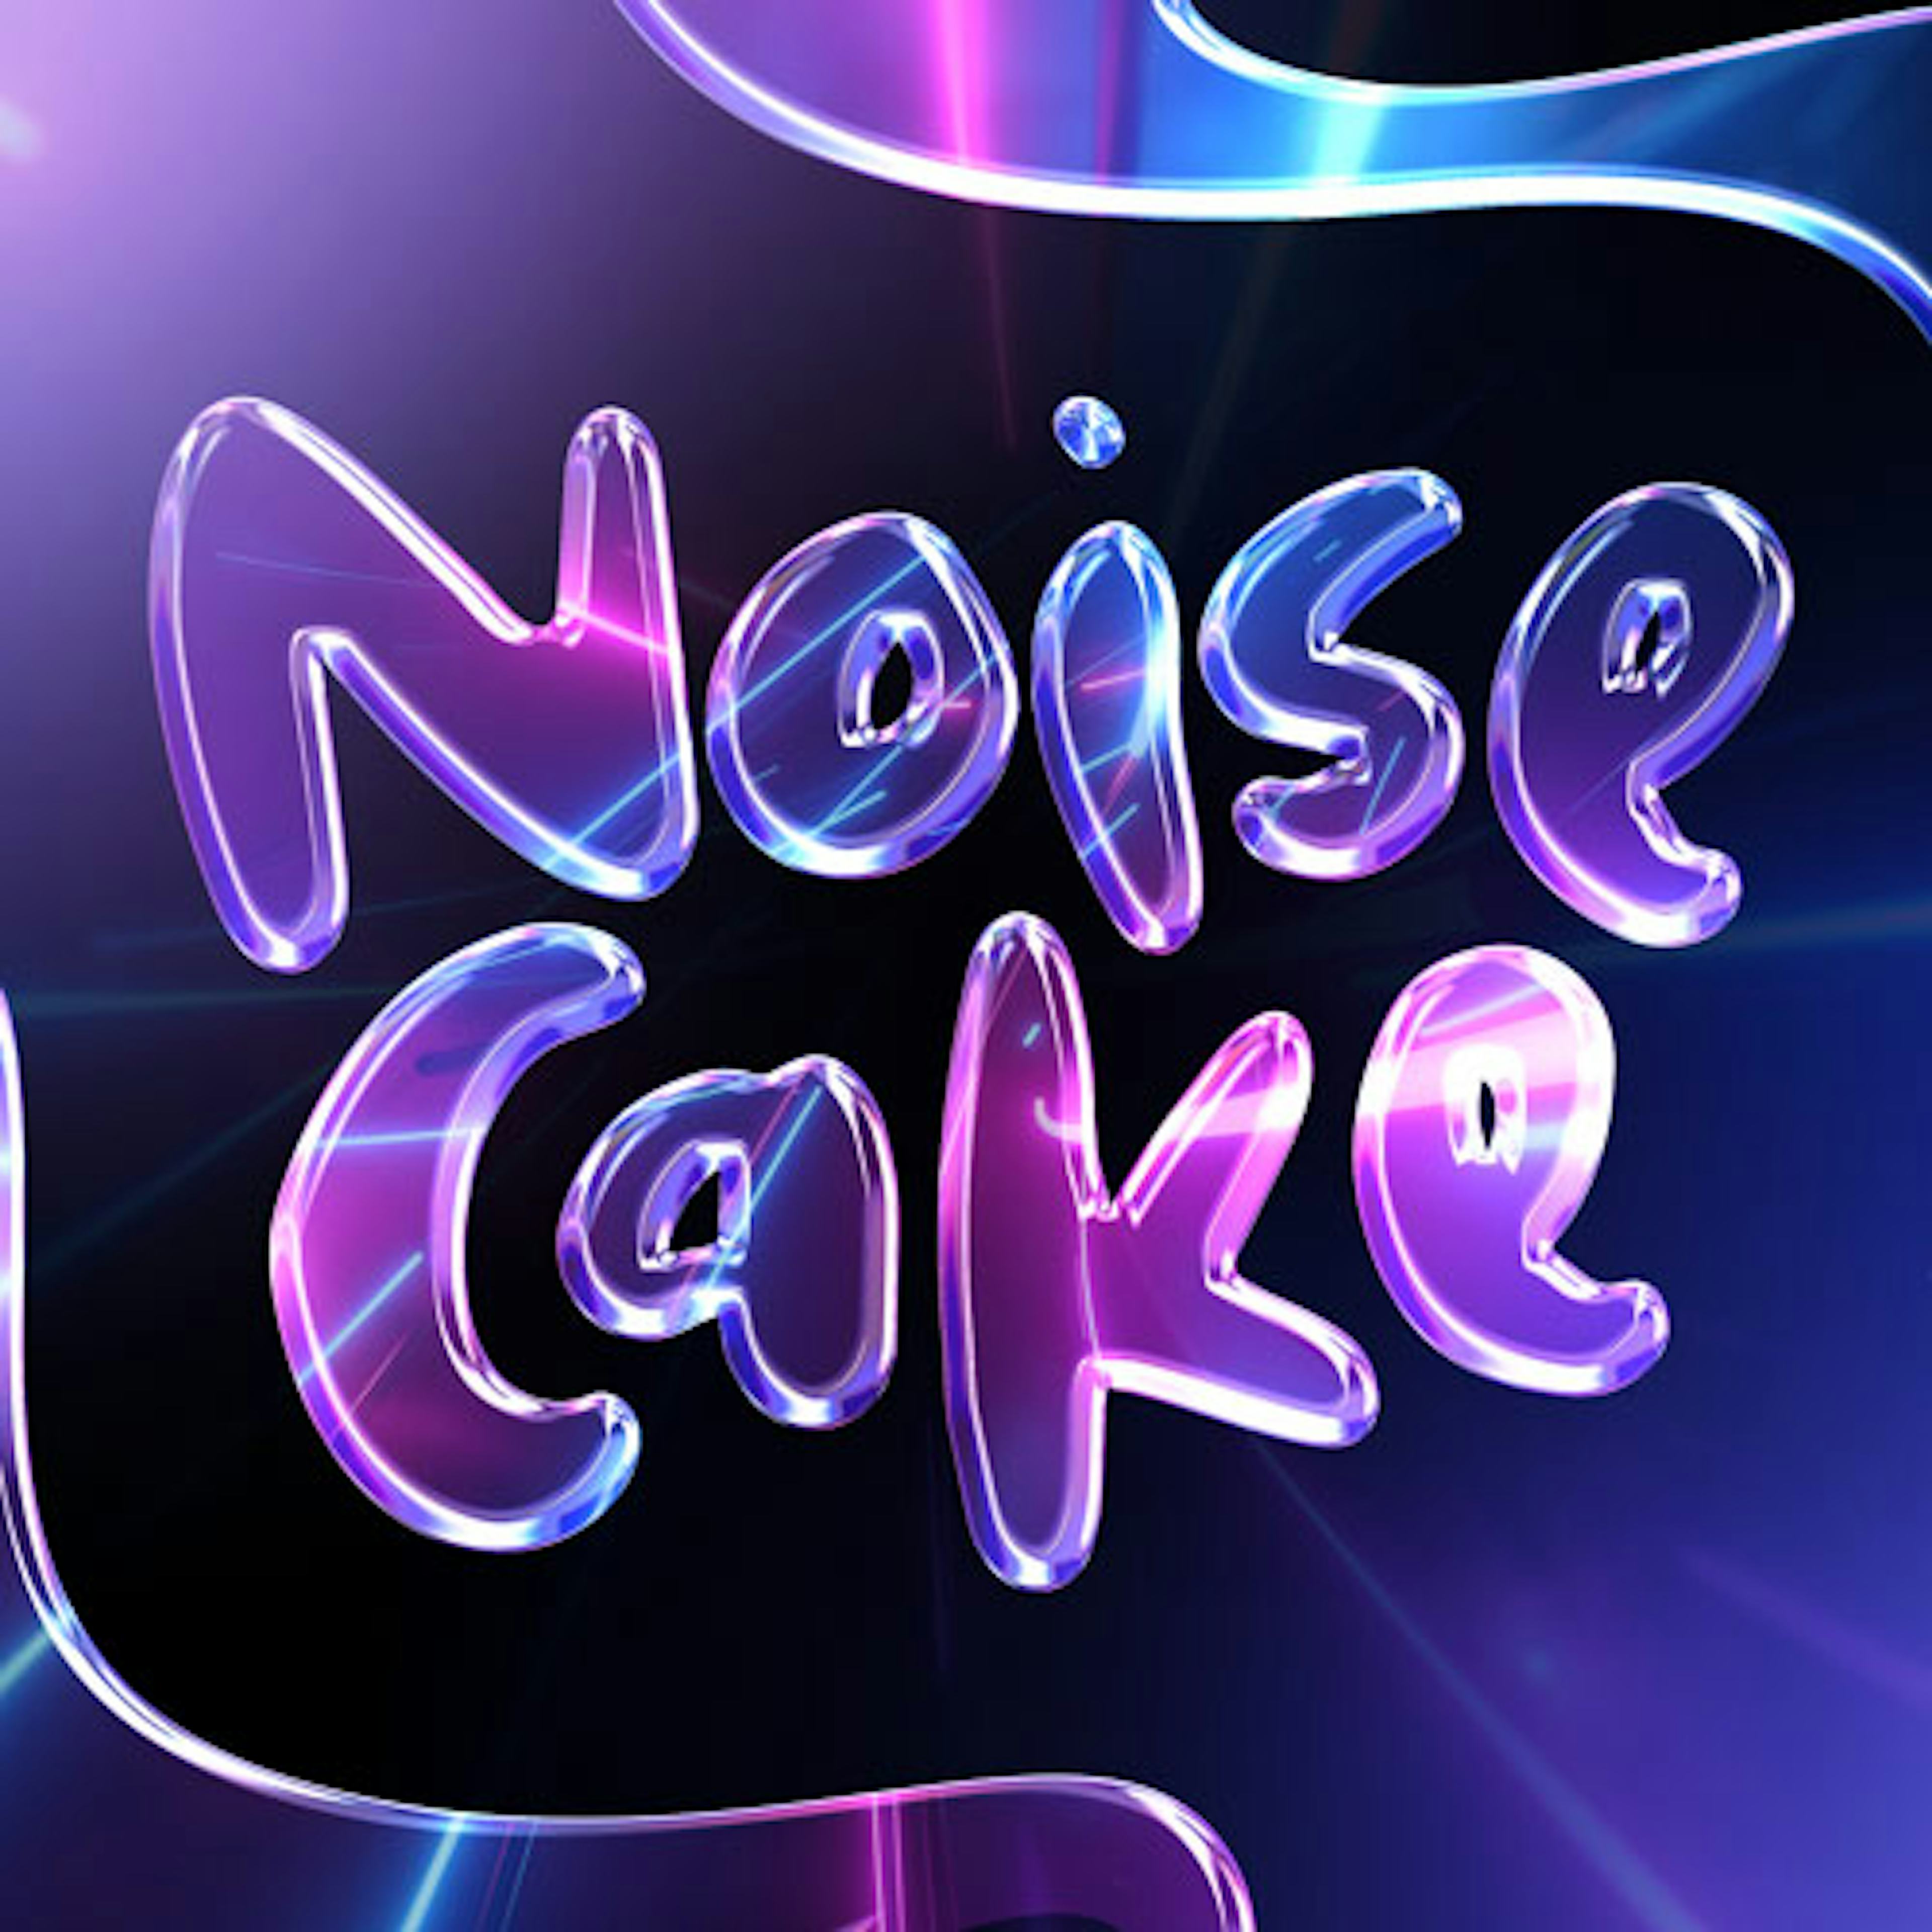 Noise Cake artwork